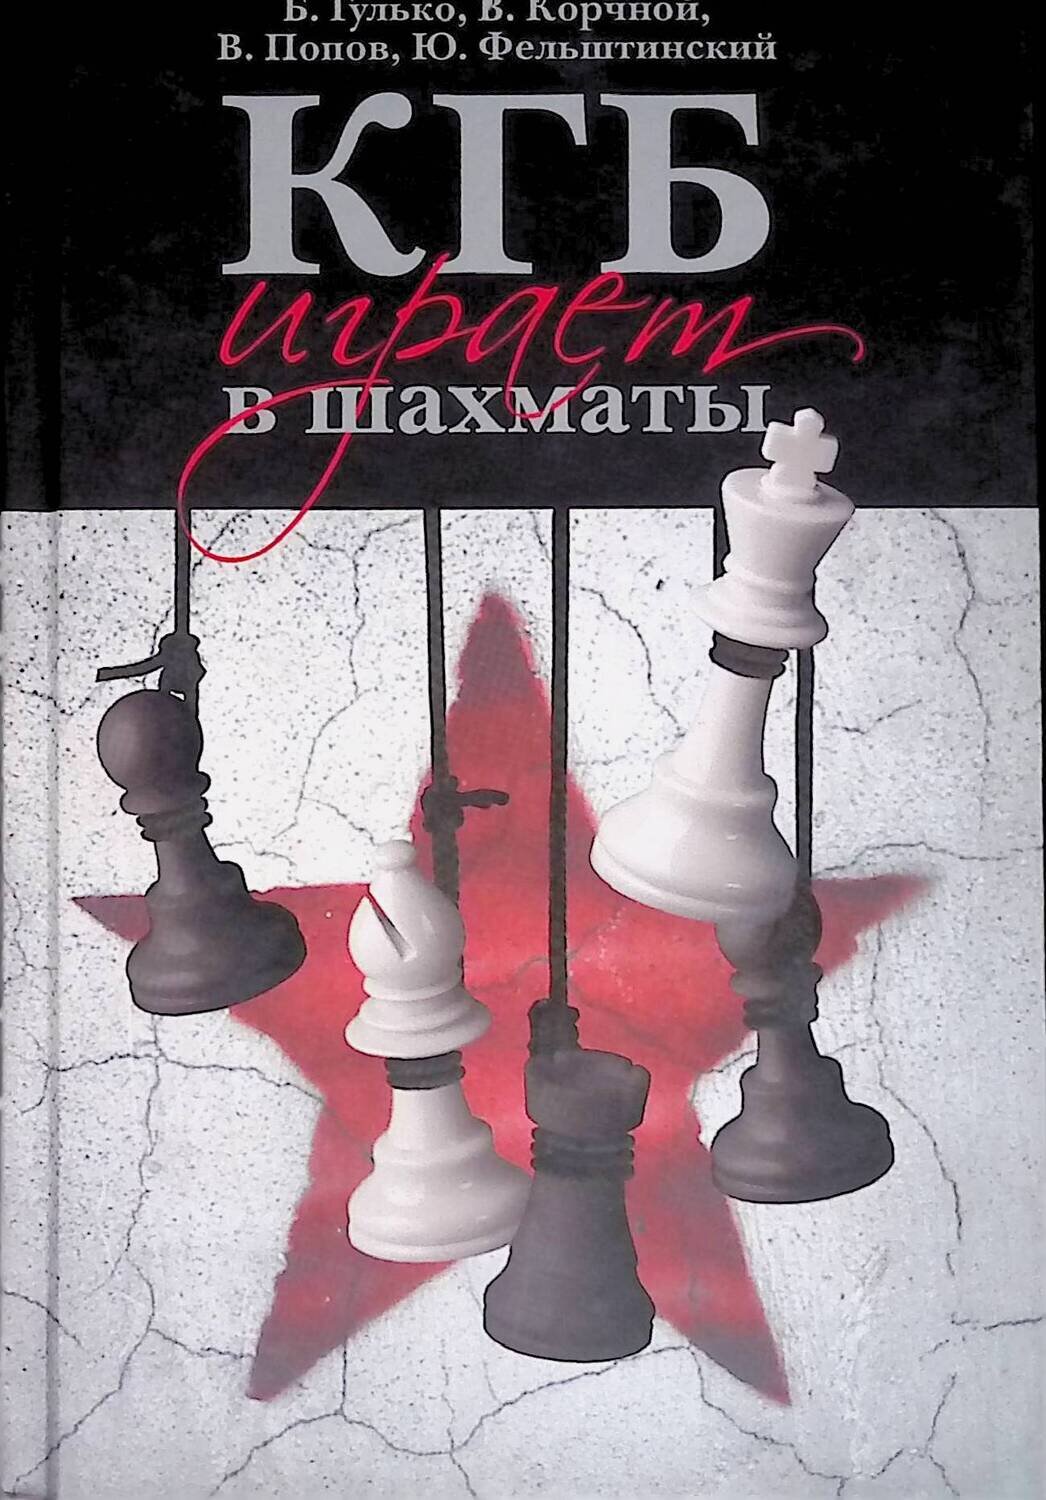 КГБ играет в шахматы; Гулько Борис, Корчной Виктор, Попов Владимир, Фельштинский Юрий